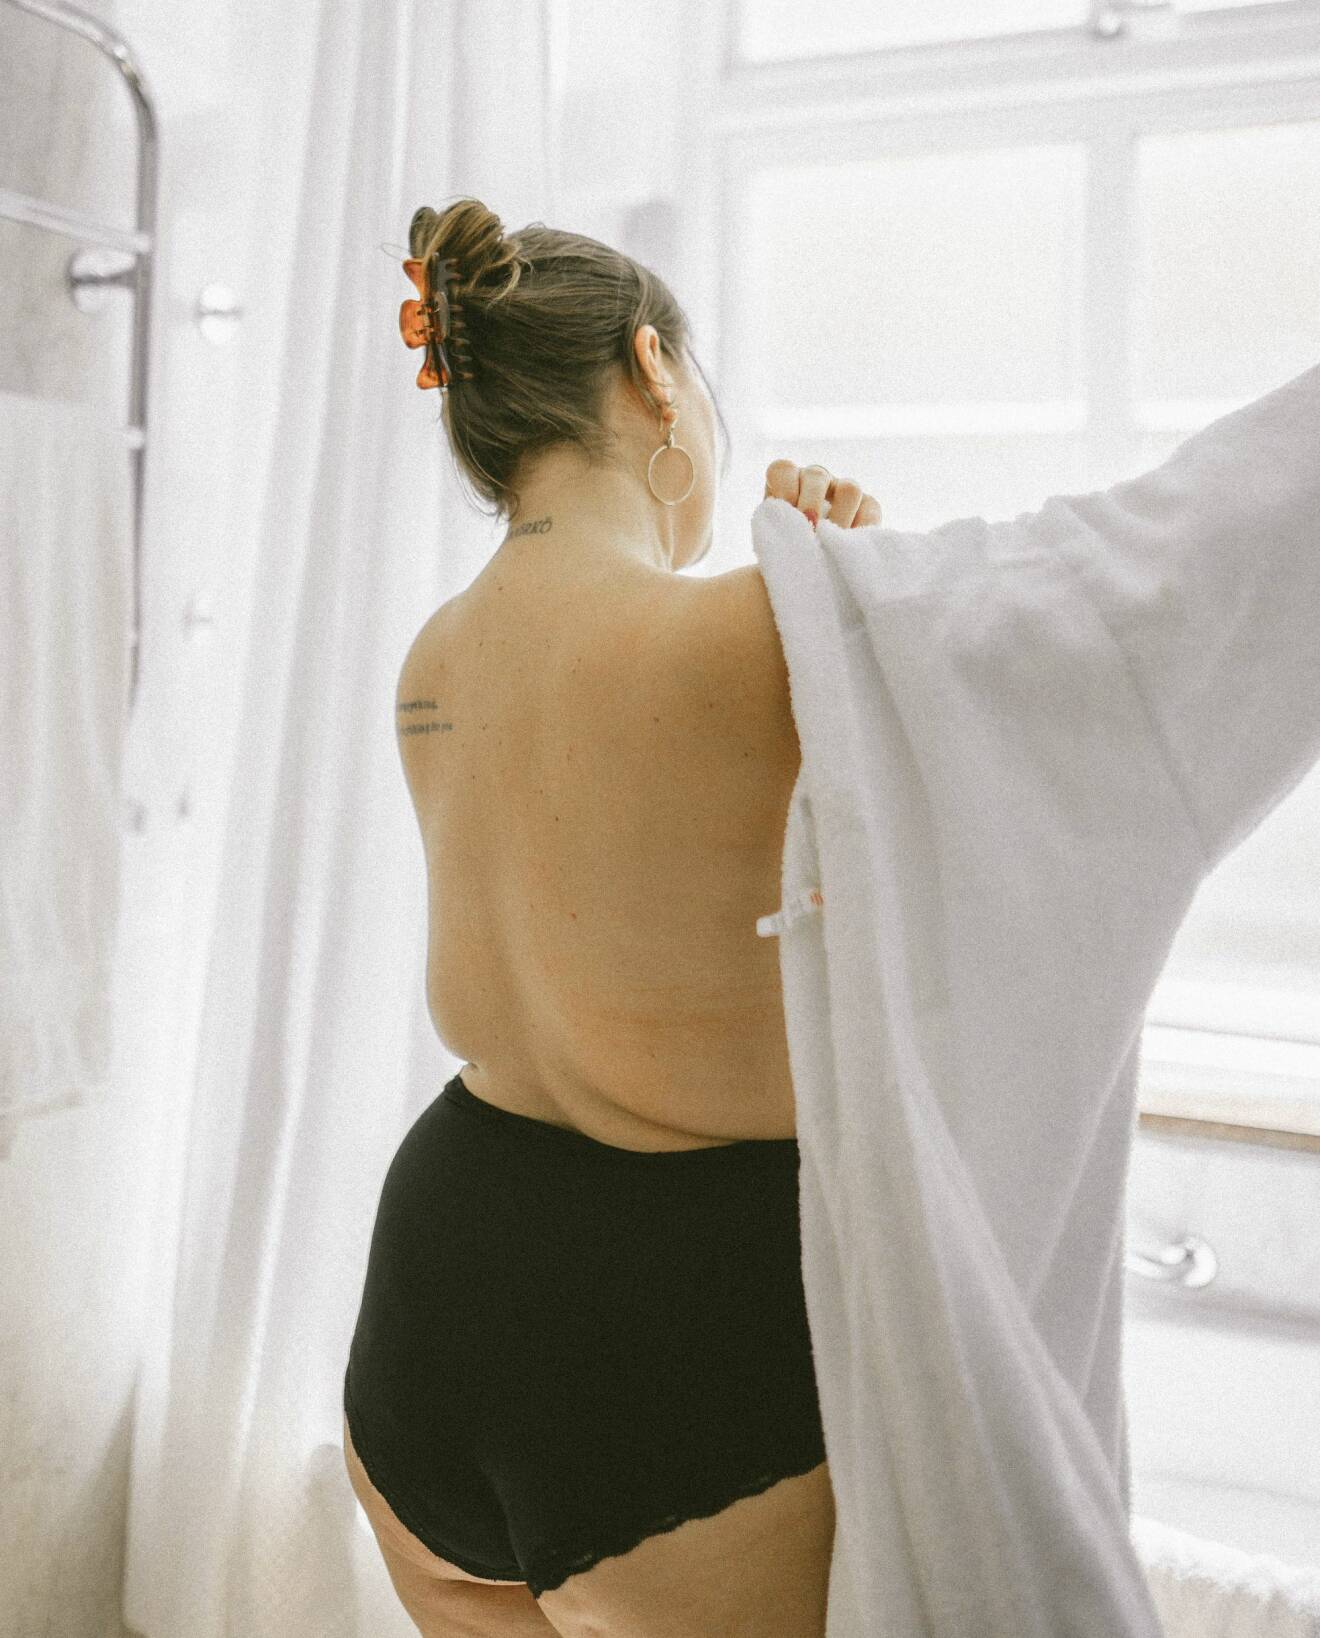 Tuggmotstånd är namnet på fotografen Amandas Instagramkonto som är en frizon för alla kroppar – stora och små, unga som gamla, vanliga eller ovanliga.